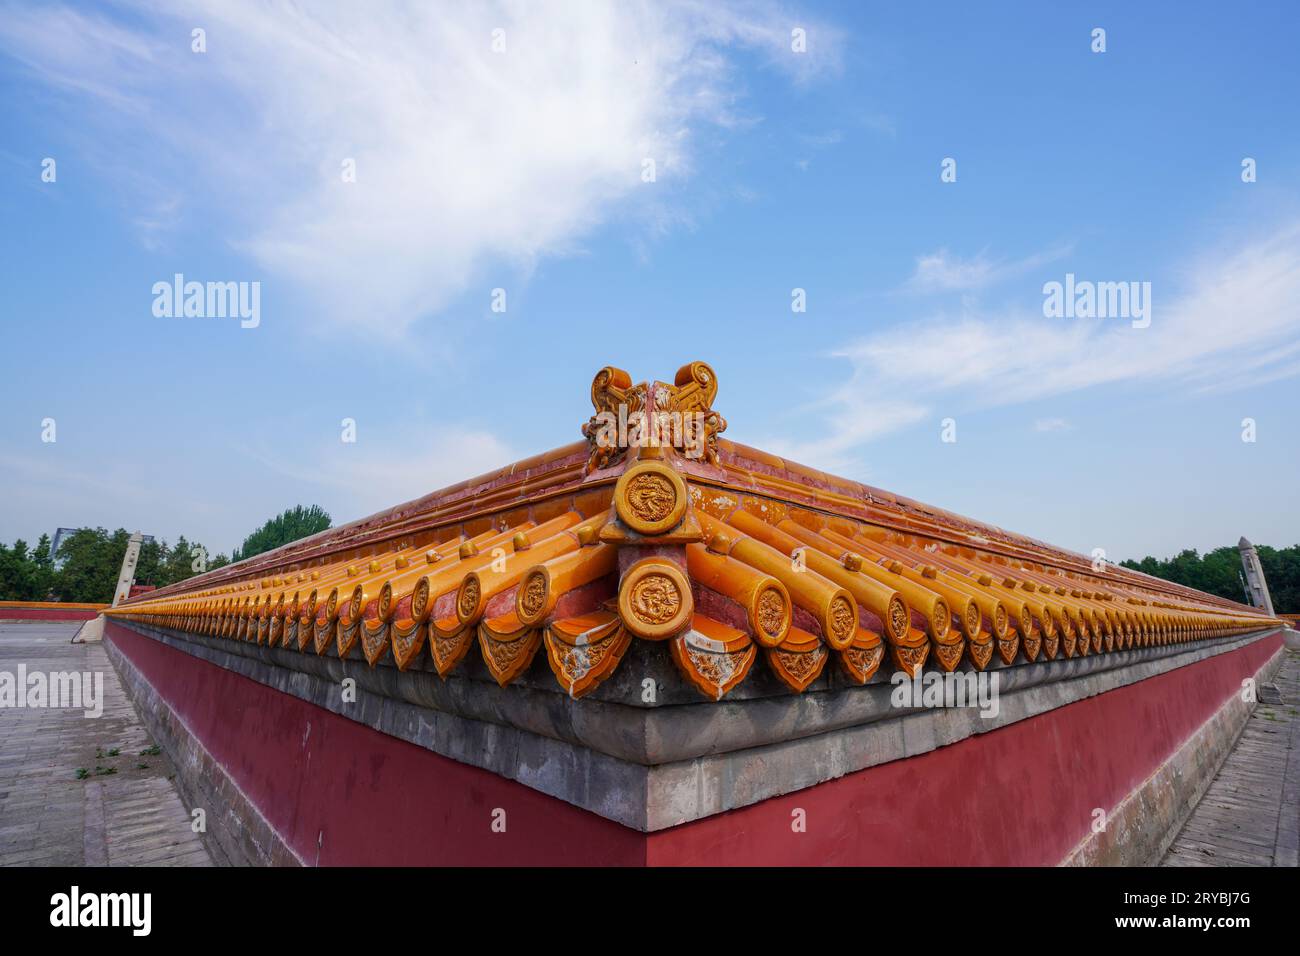 Mur bas de tuiles vernissées chinoises jaunes de Fangzetan dans le parc Ditan de Beijing Banque D'Images